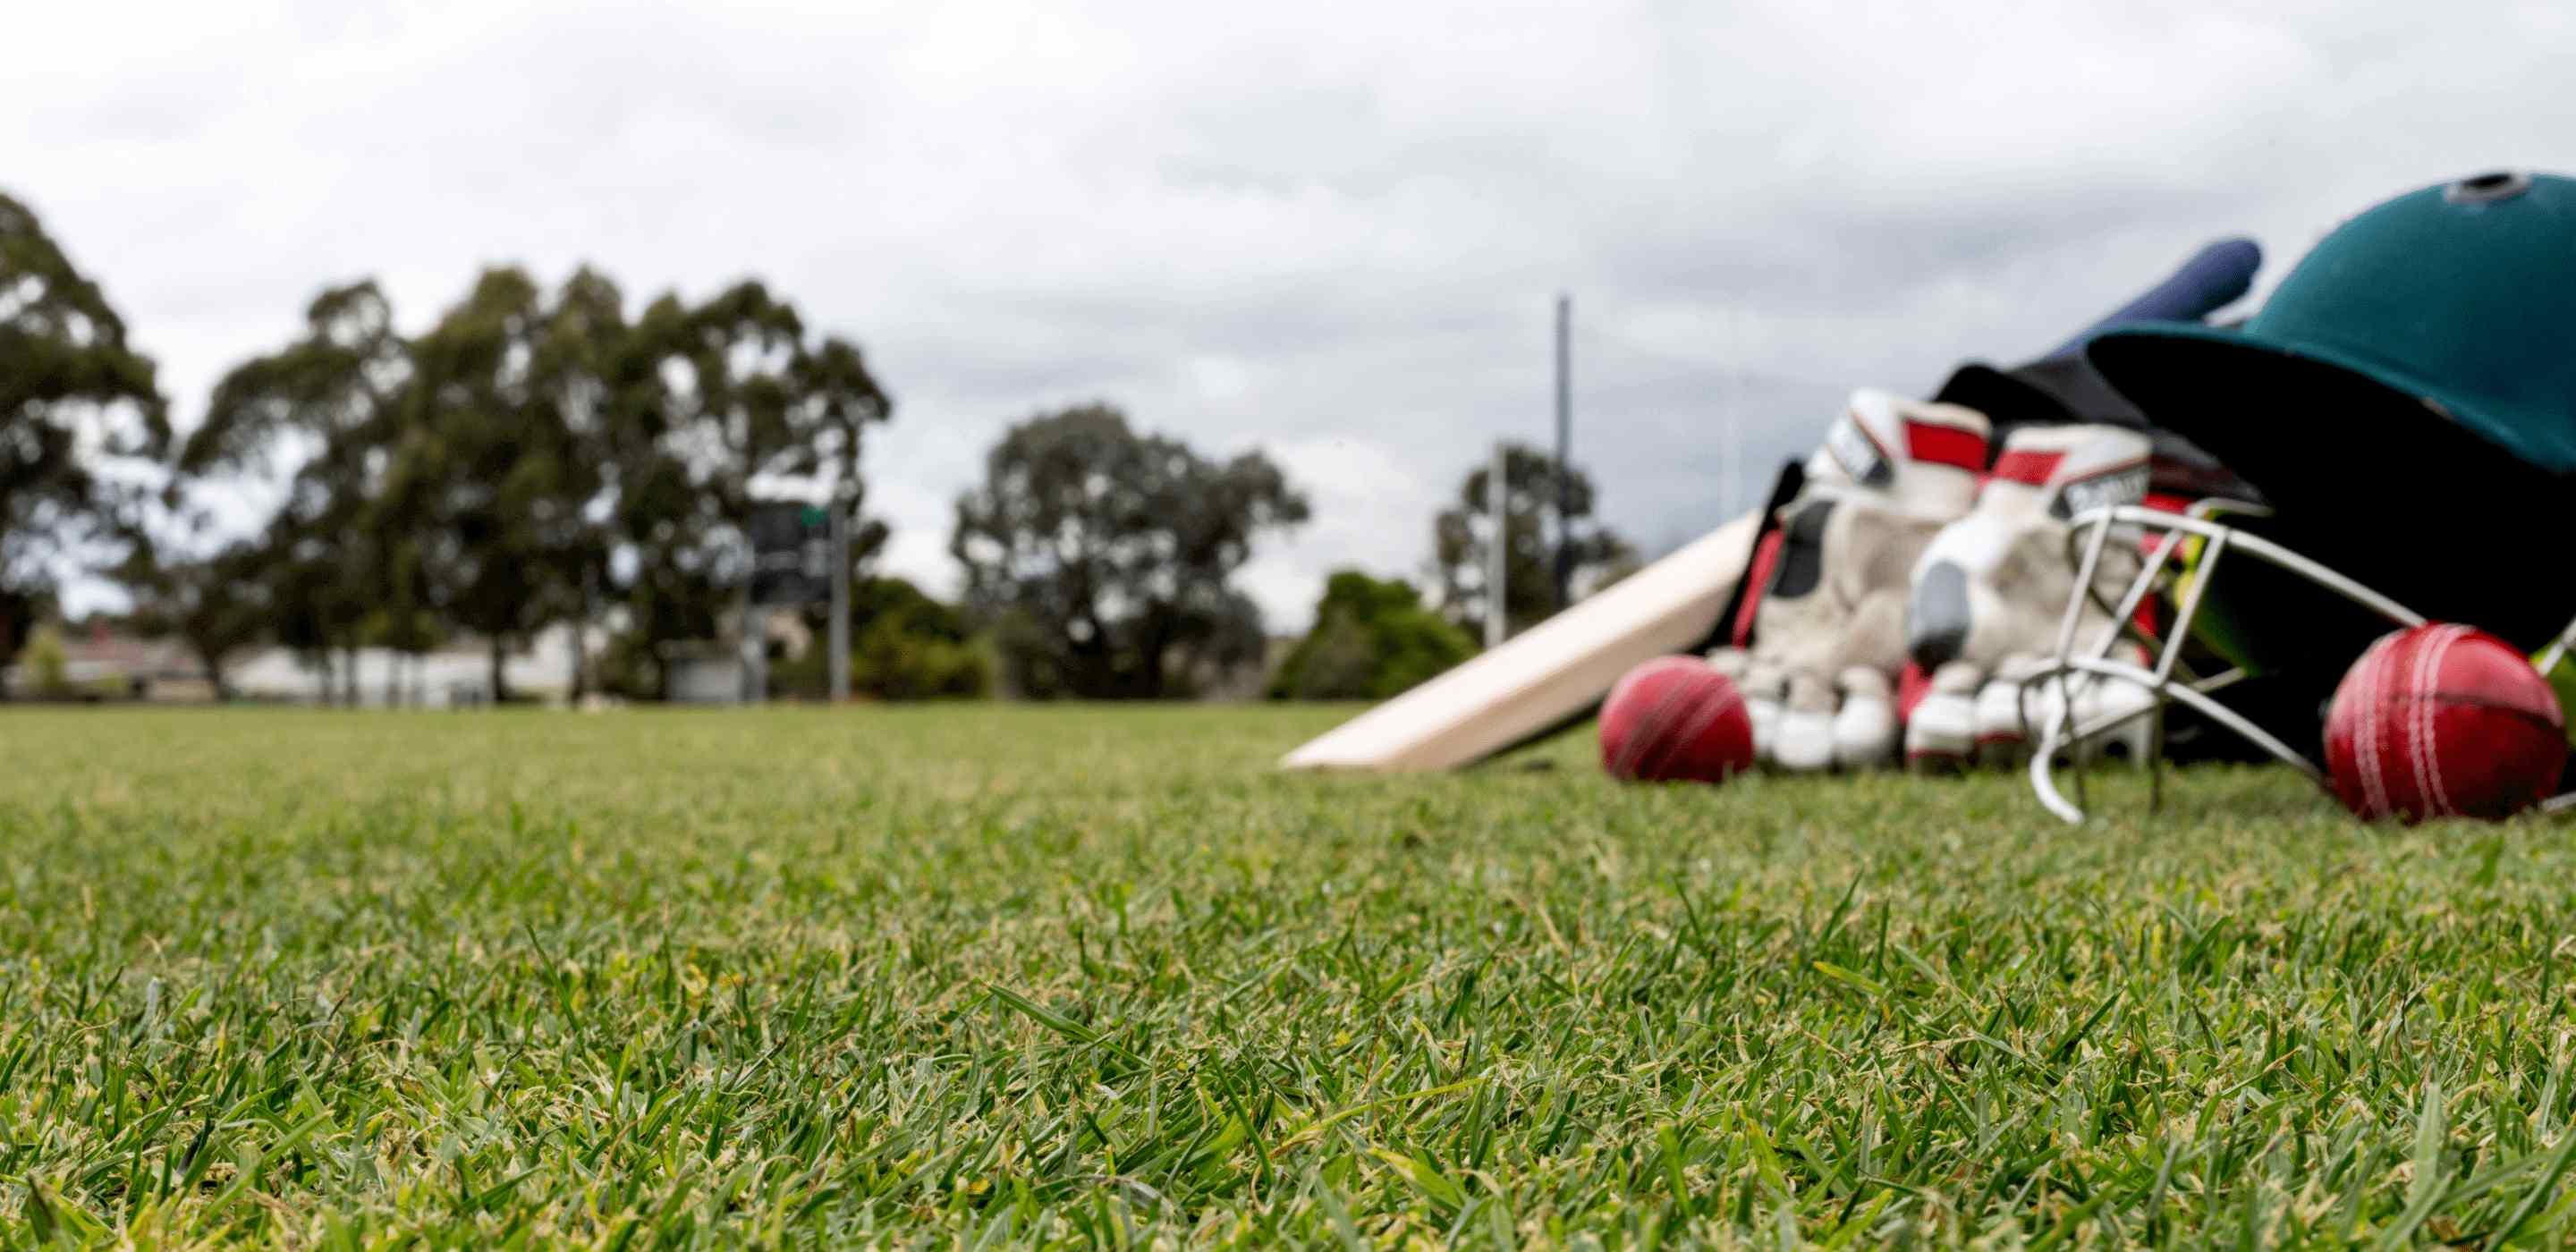 Cricket sports wear on a field grass